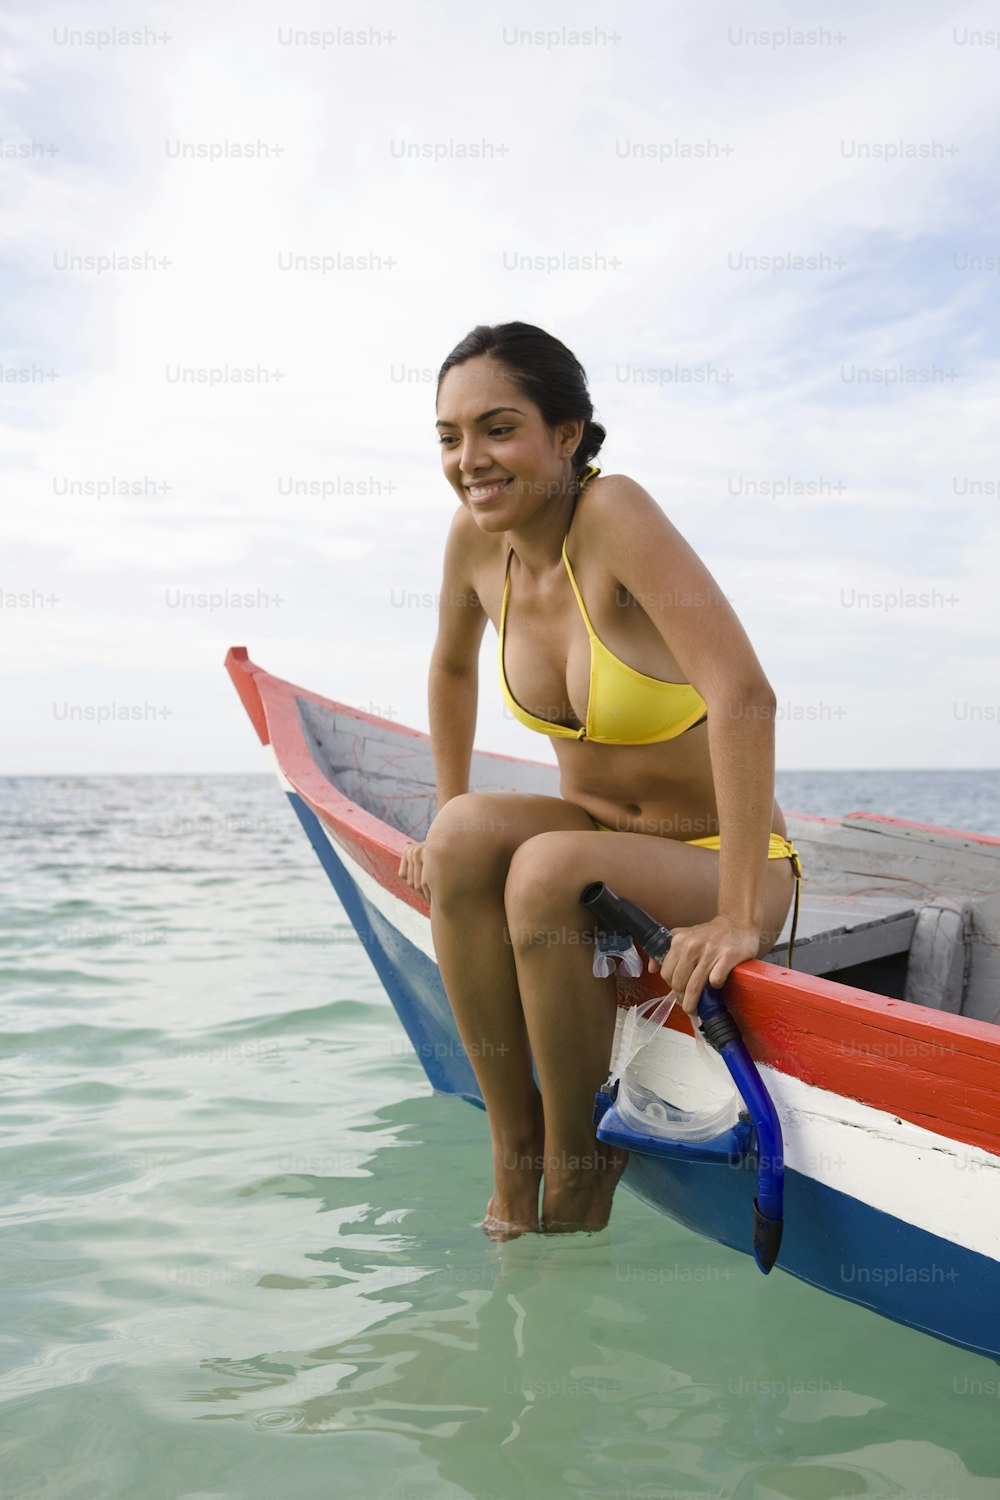 Una mujer en bikini amarillo sentada en un bote